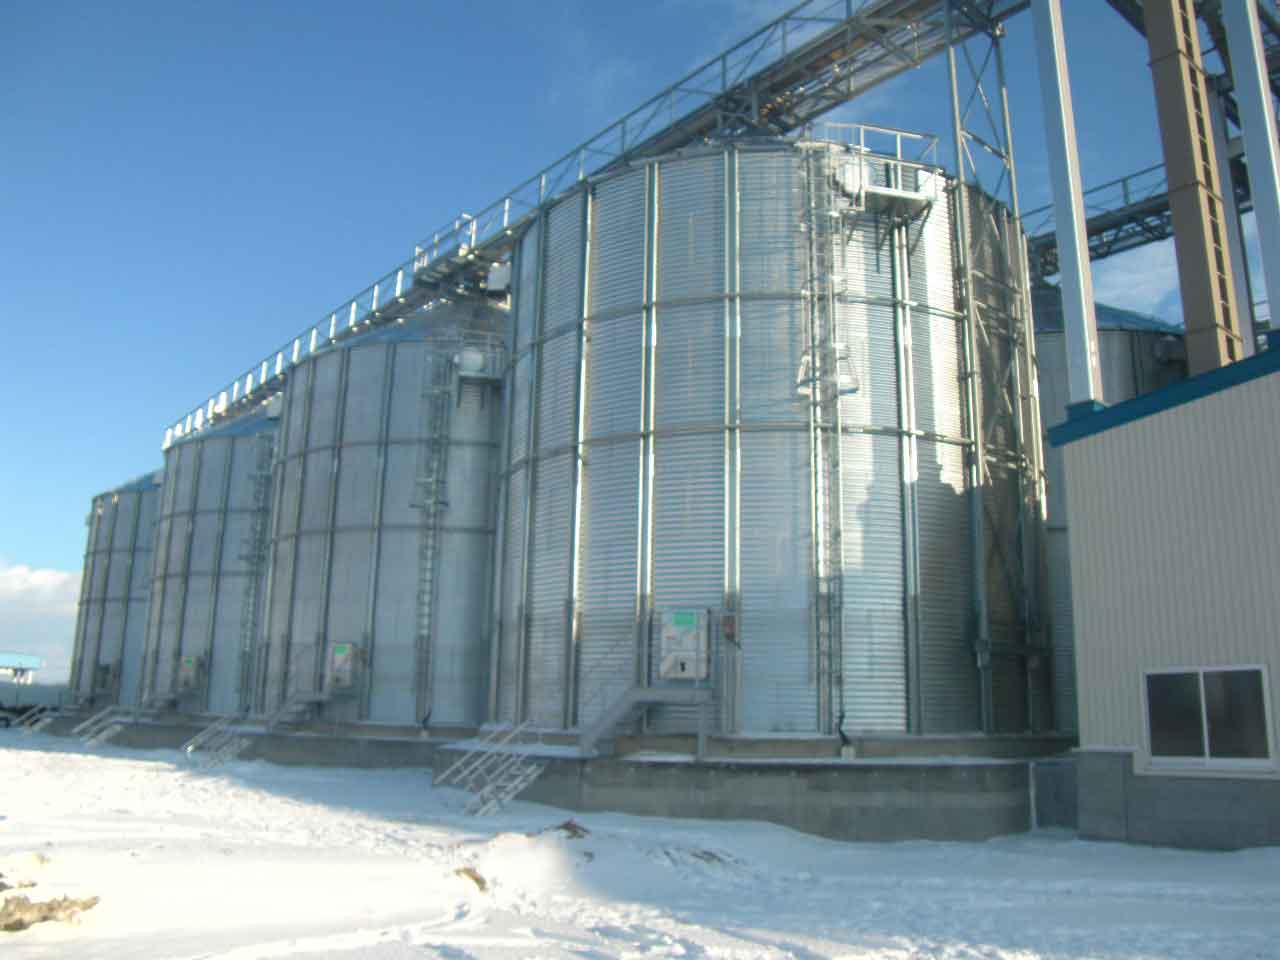 事業協同組合チホク会　農産物集出荷貯蔵施設(小麦調整貯蔵施設)新設工事